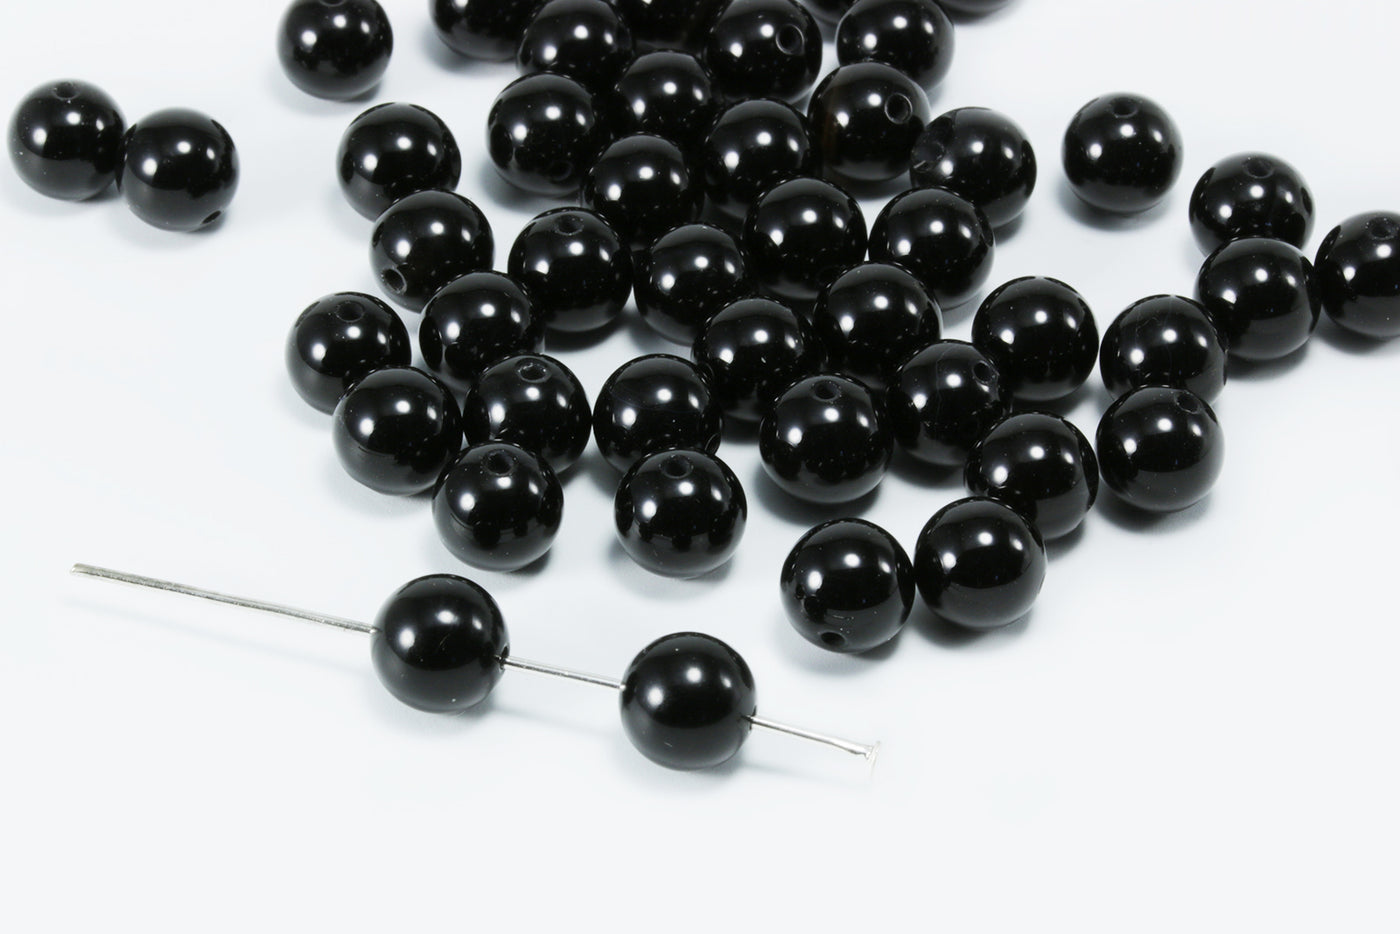 Edelstein Perlen, Onyx, Kugel, Ø 8 mm, 10 Stück